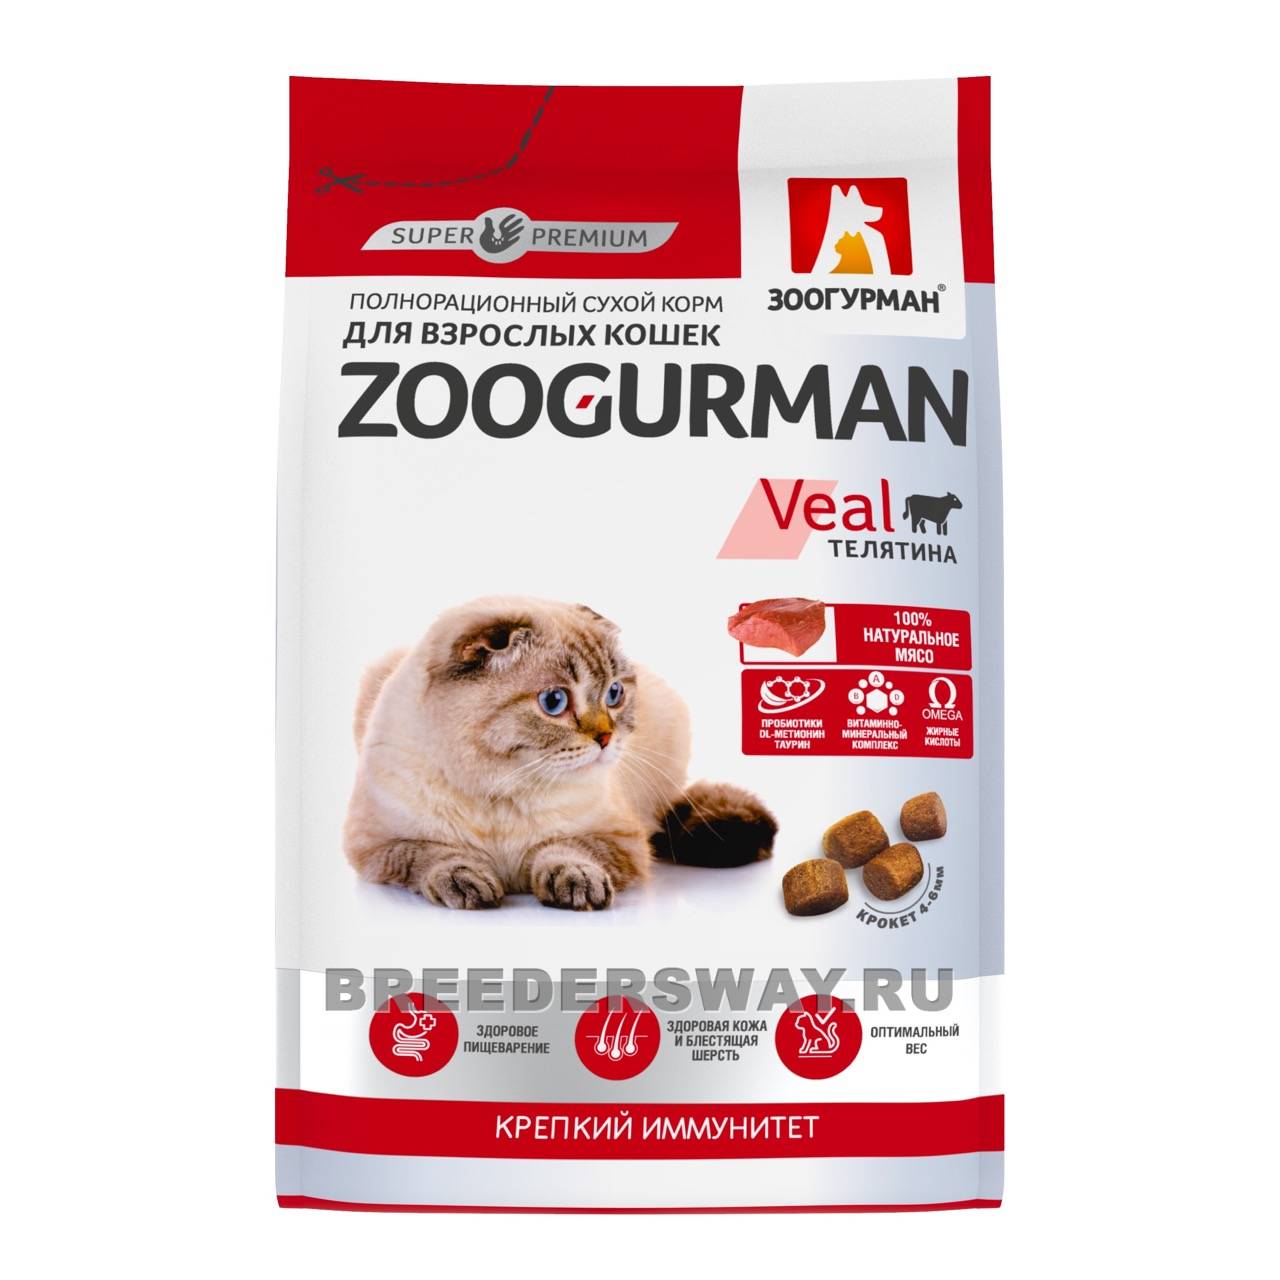 350гр Zoogurman Supreme для кошек супер-премиум Телятина 32/16 6мм